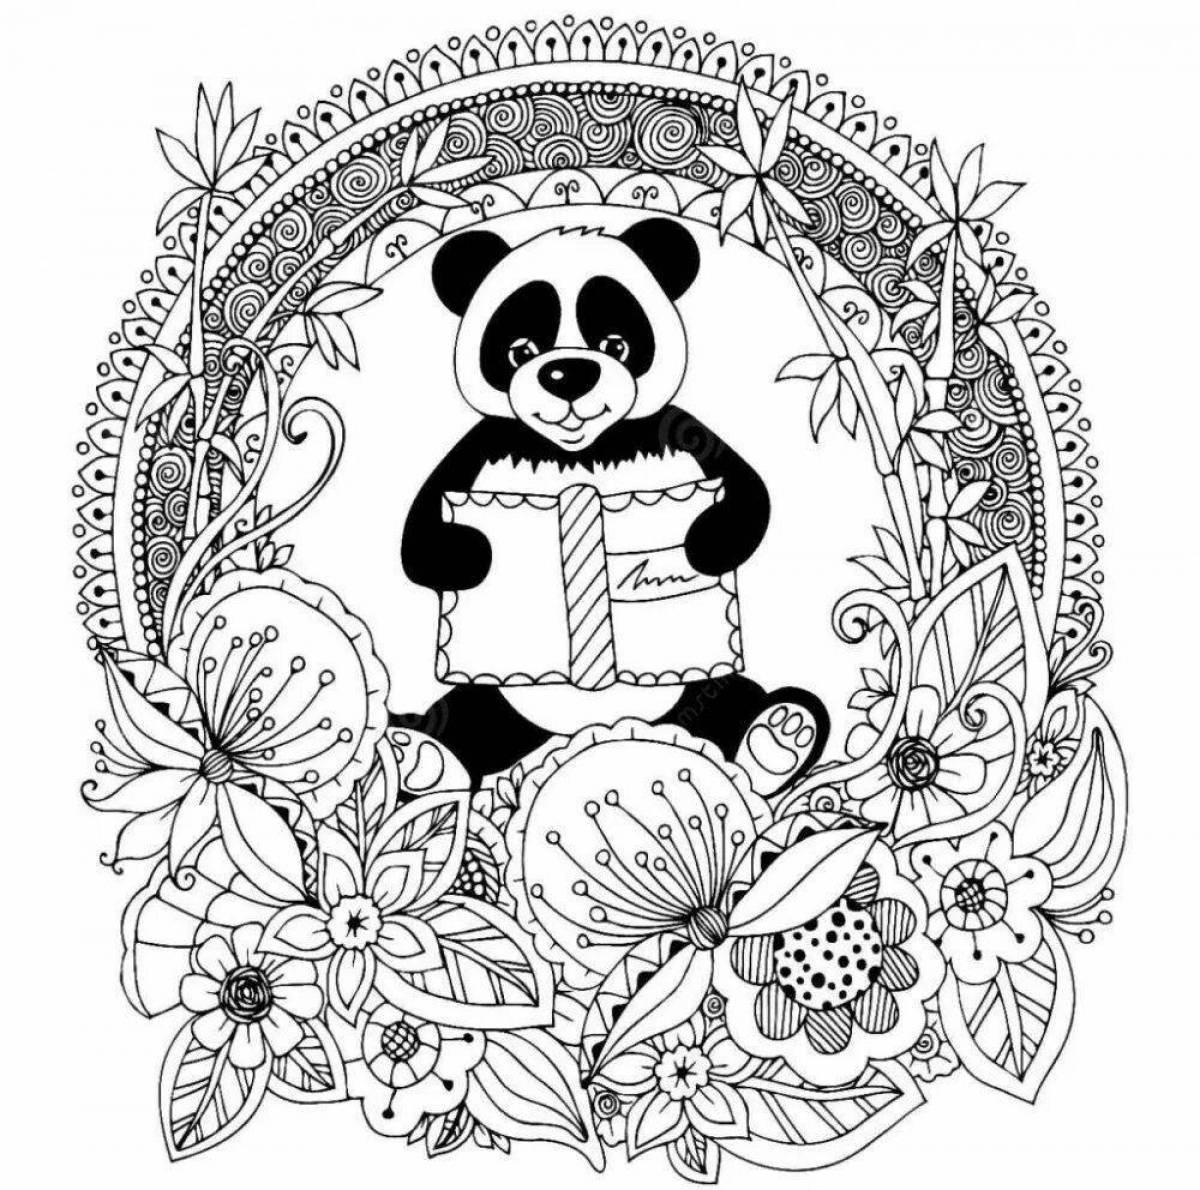 Joyful coloring antistress panda